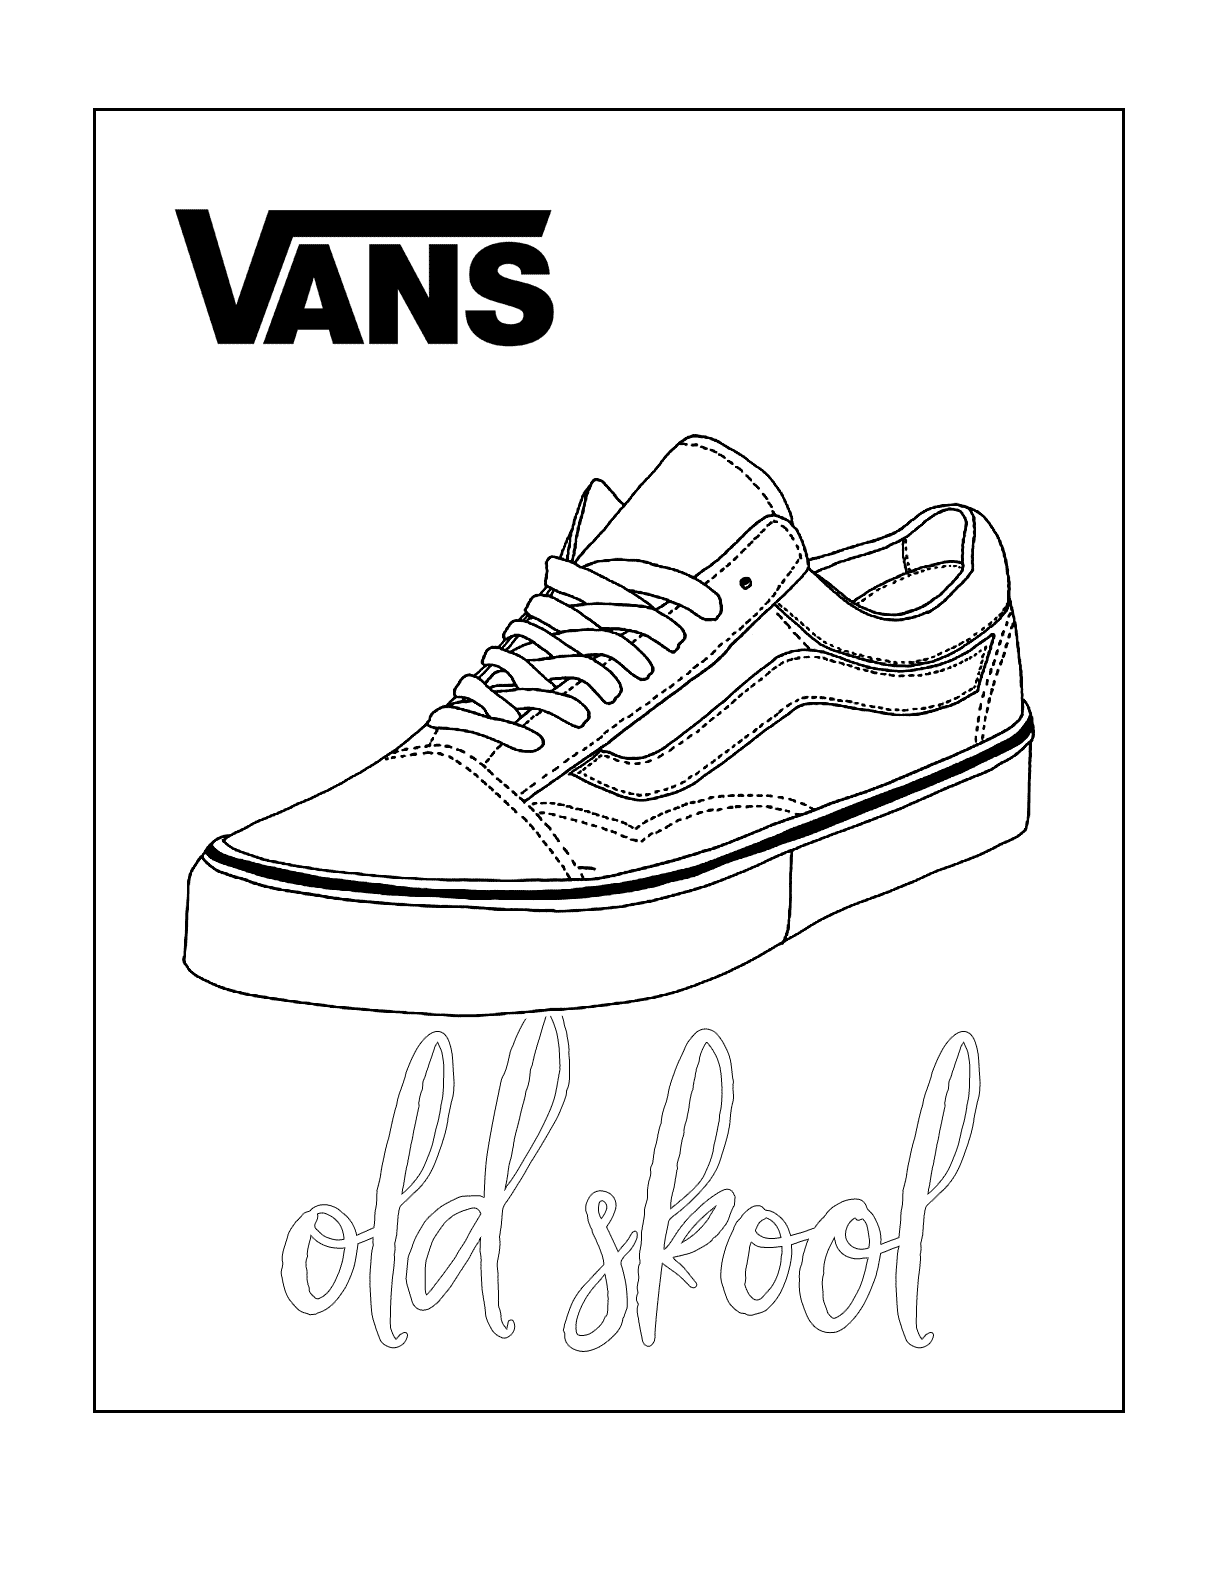 Vans Old School Skater Shoe Coloring Page